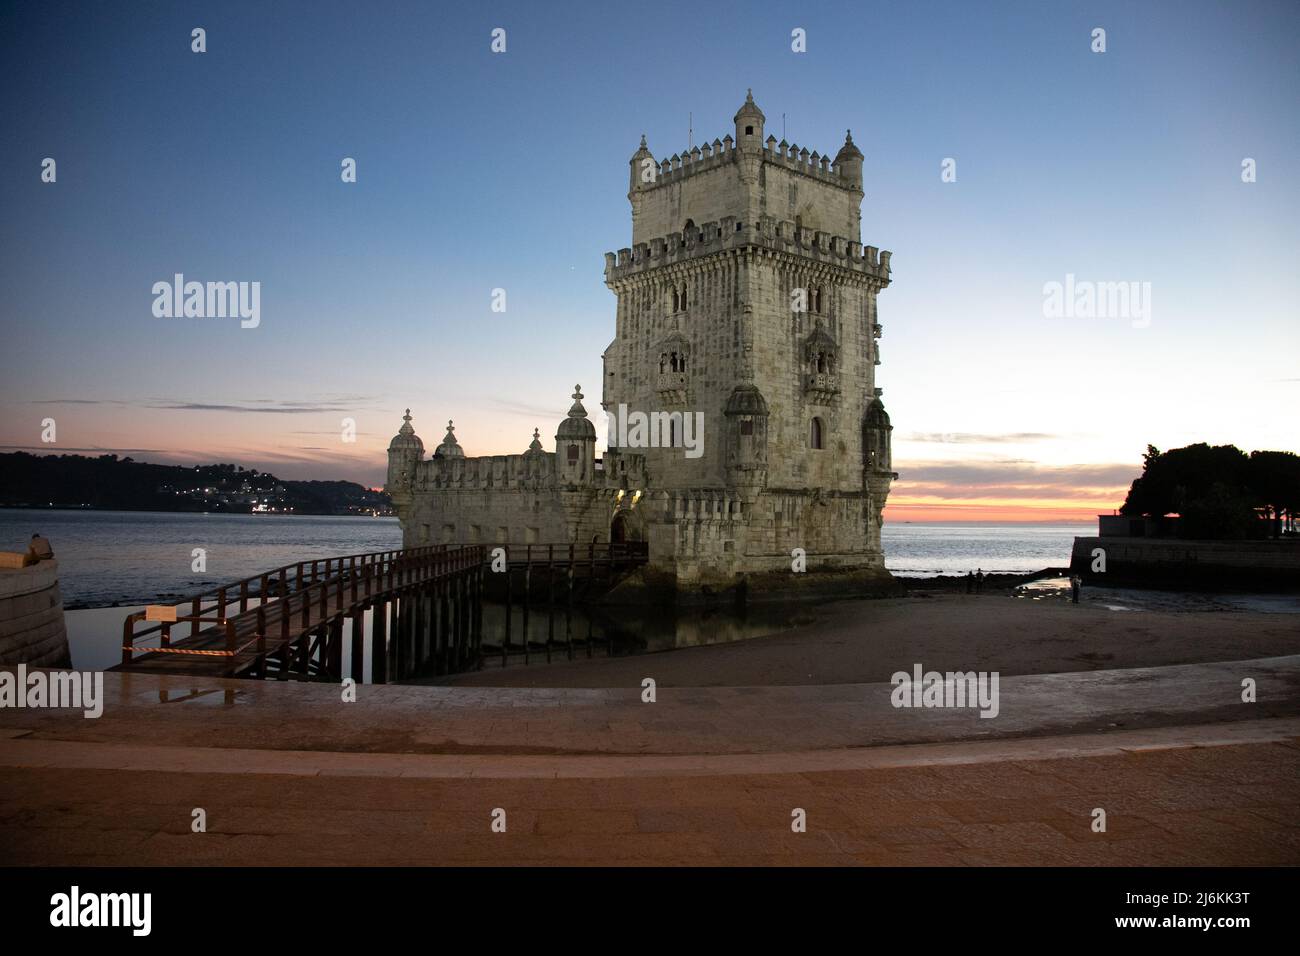 Belém Tower or Torre de Belém, Lisbon, Portugal Stock Photo